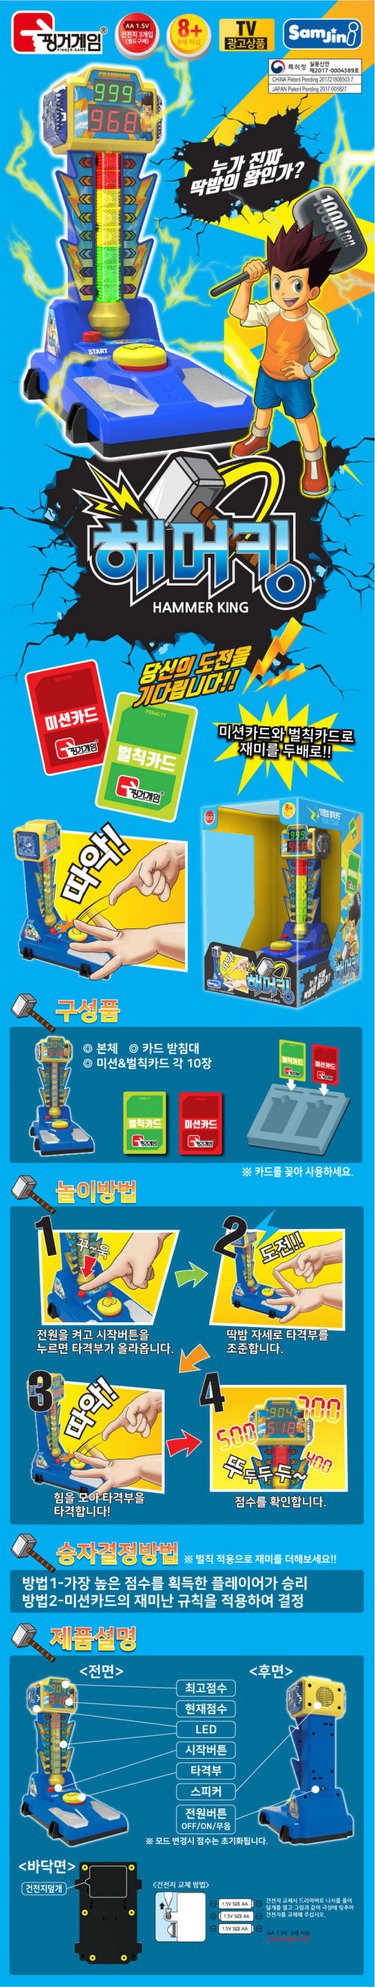 Samjini - 1/12 Scale Finger Game - Hammer King